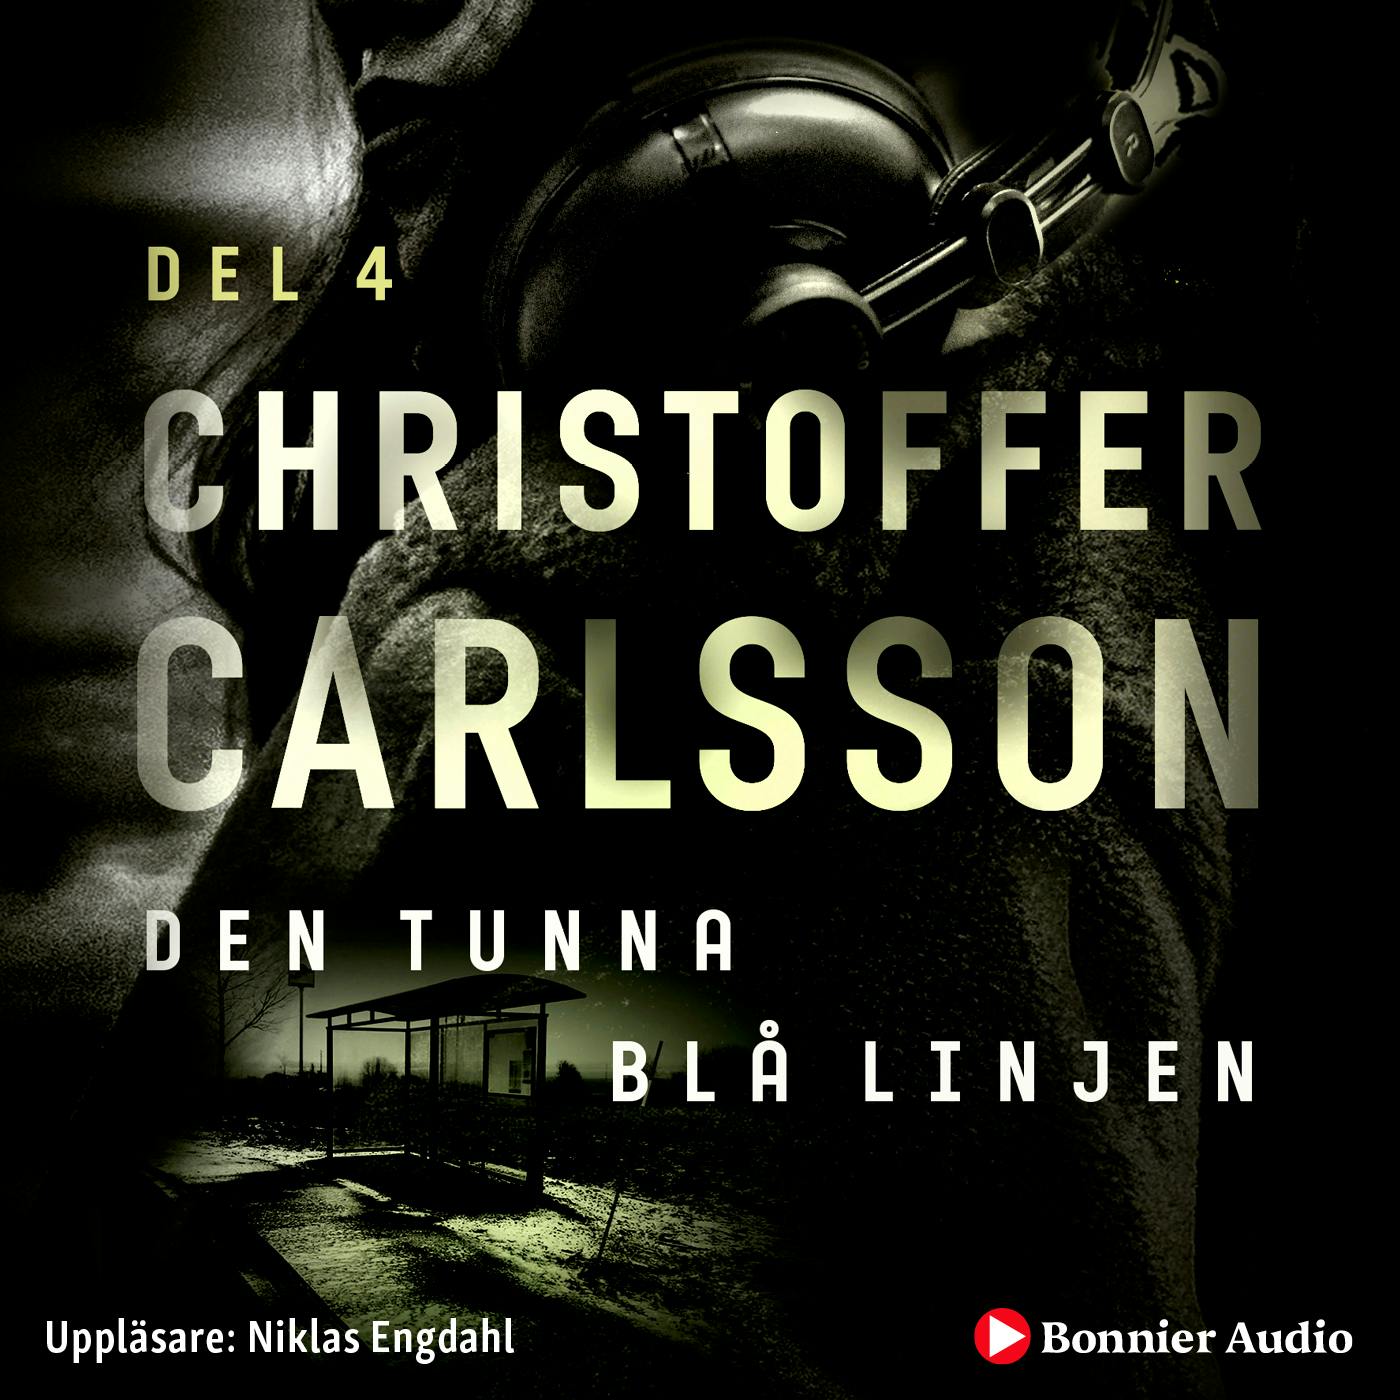 Den tunna blå linjen - Christoffer Carlsson